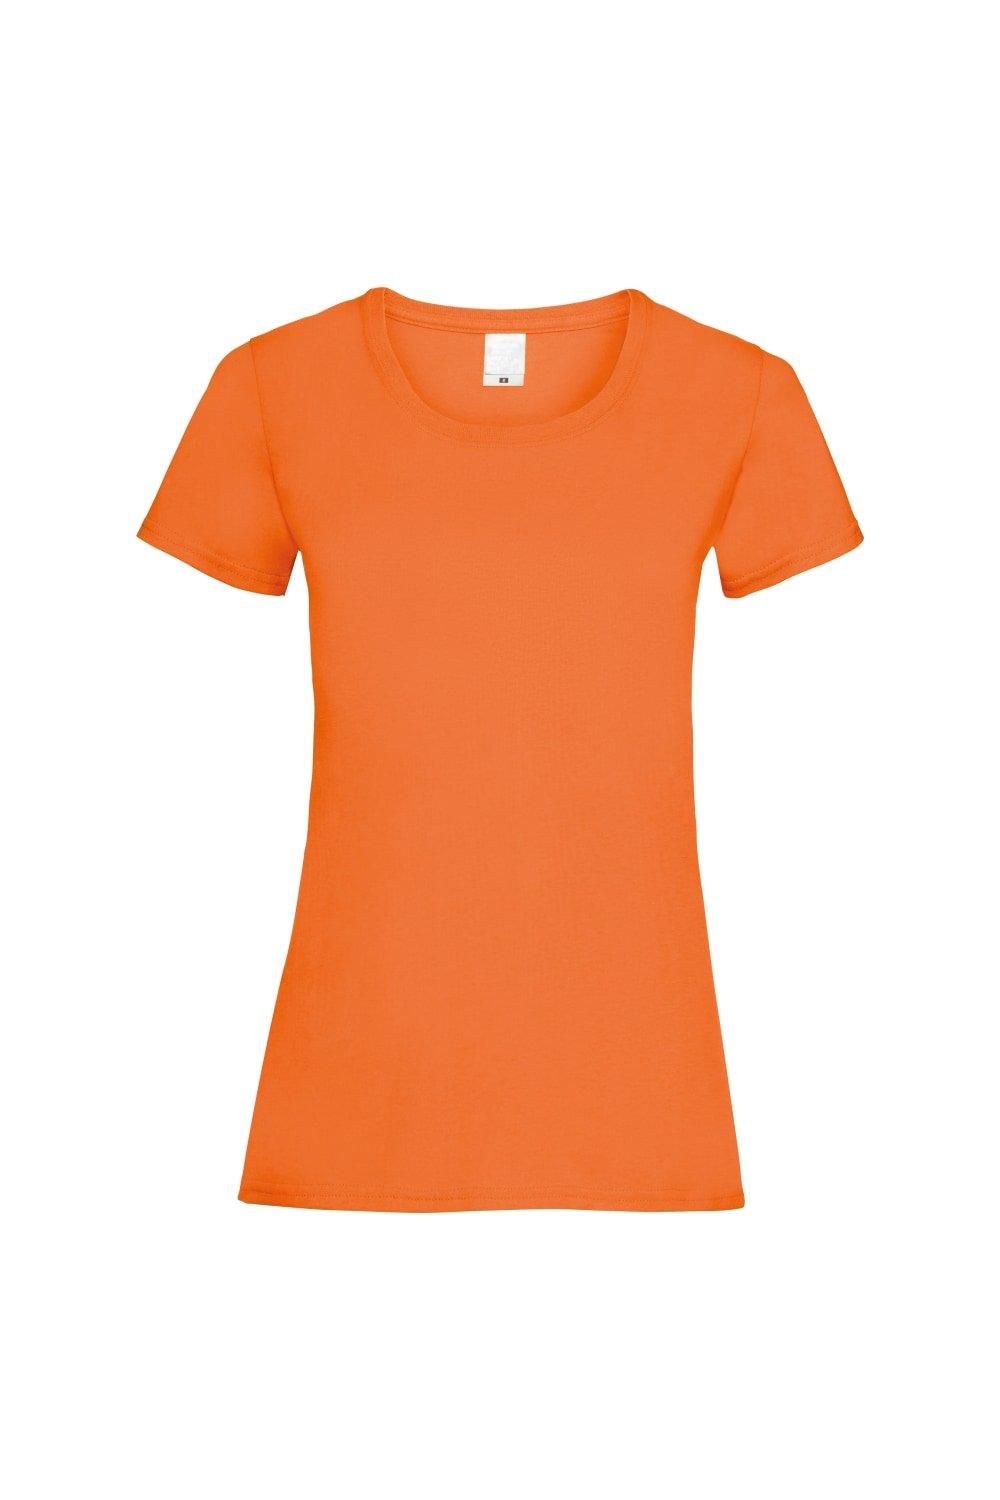 Повседневная футболка с короткими рукавами Value Universal Textiles, оранжевый мужская футболка игуана с коктейлем s серый меланж